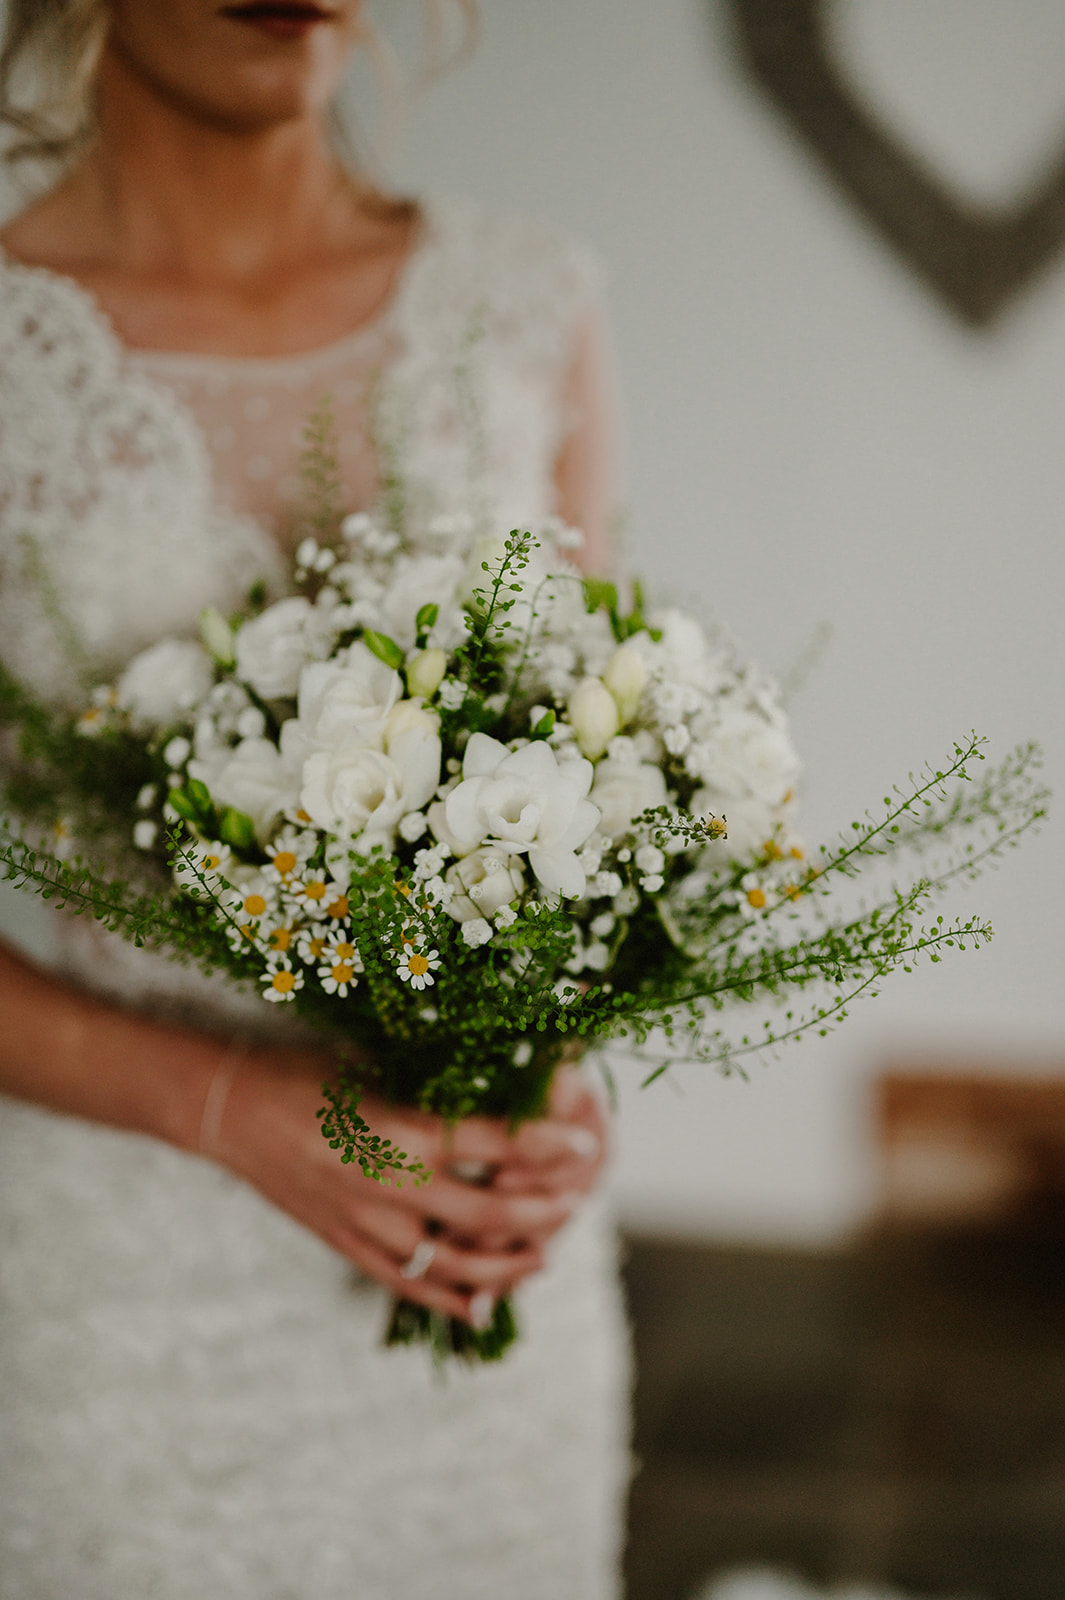 wedding flowers being held by bride